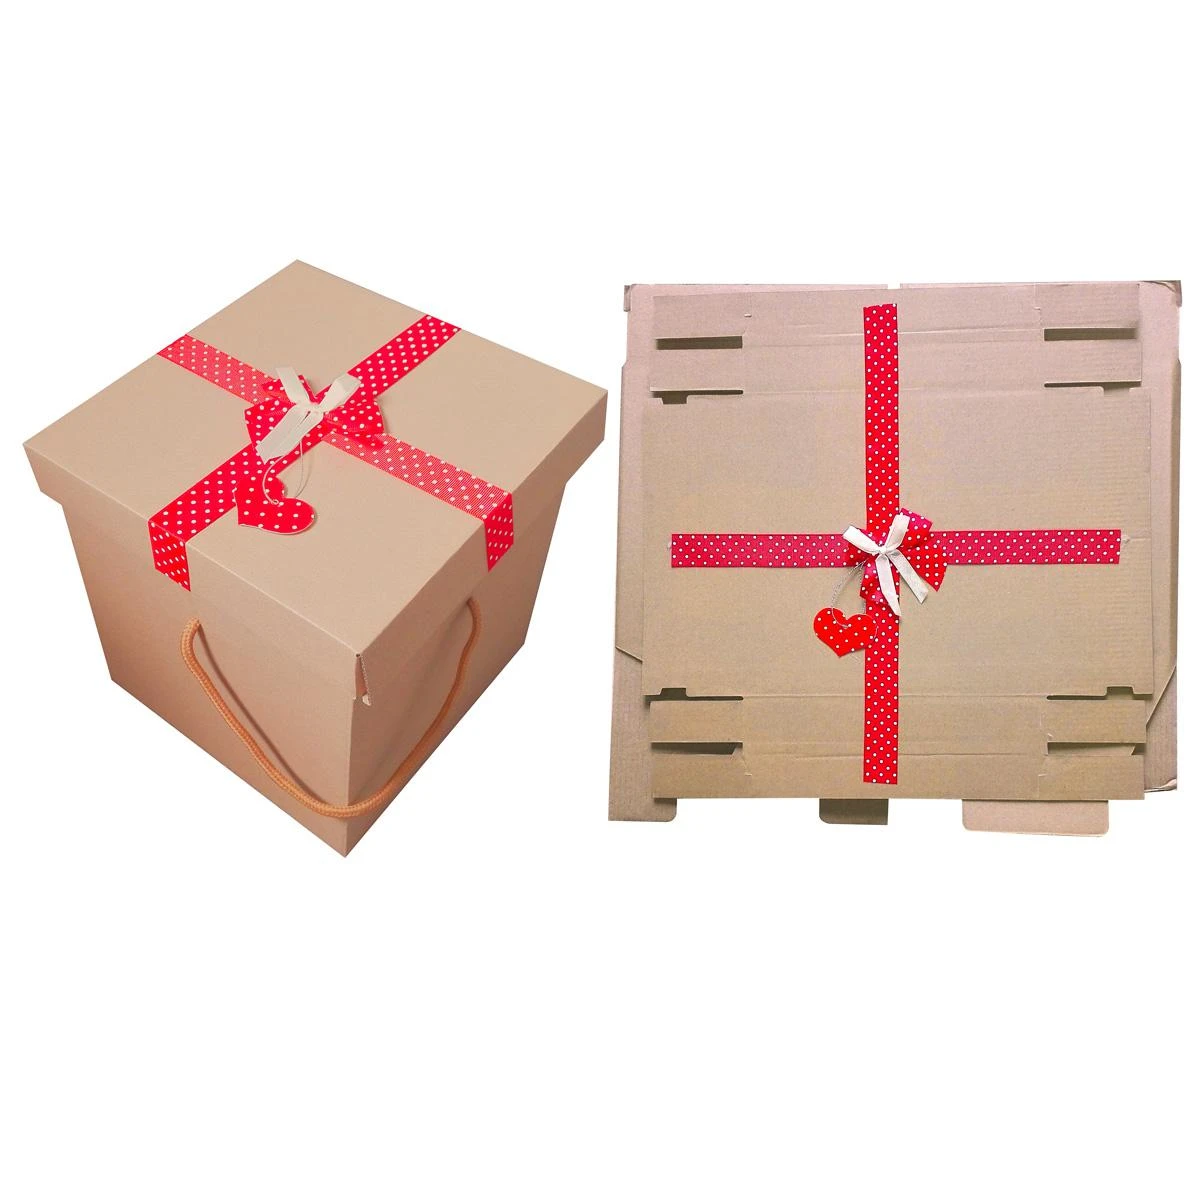  Подарочная коробка-трансформер 21х21х21 см с лентой, 37332